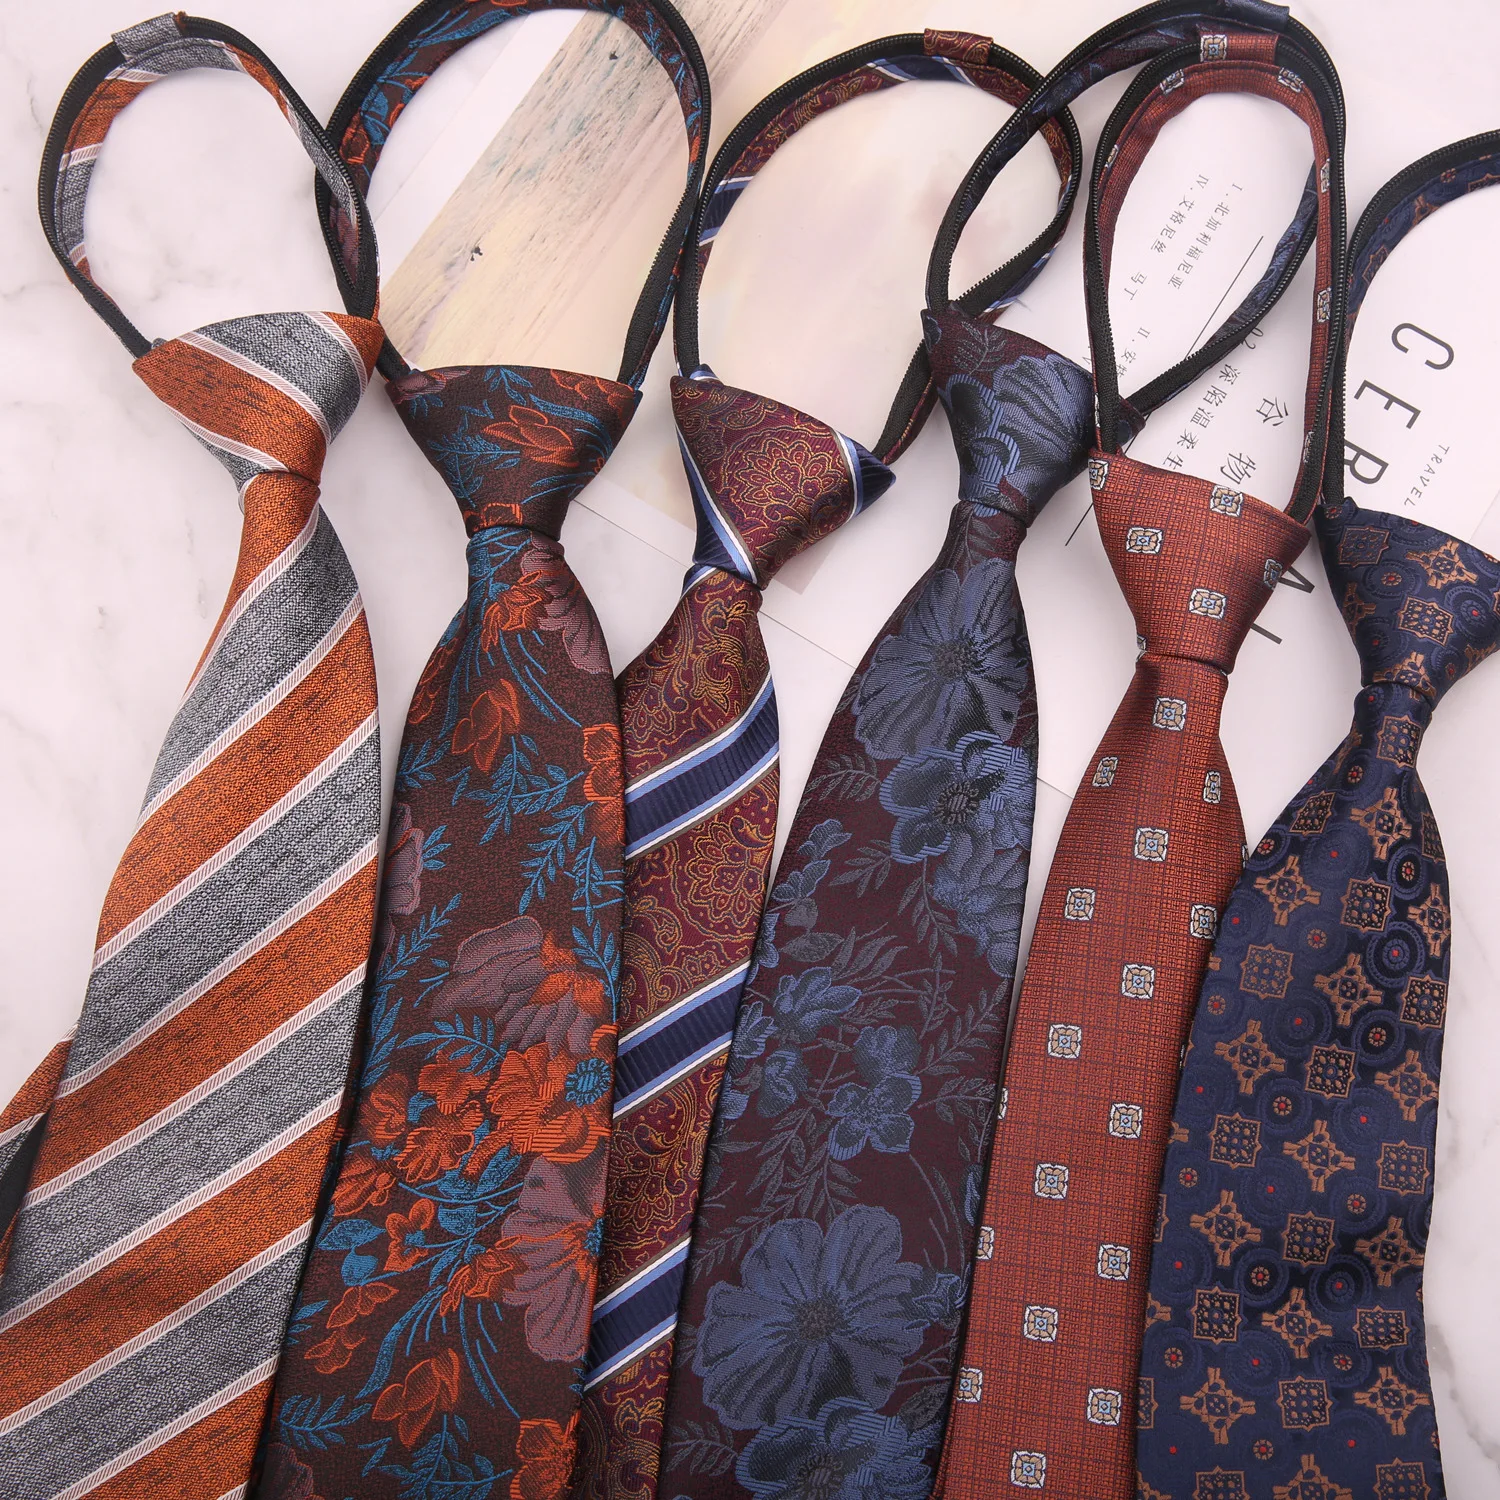 

New Business Lazy Neck Tie for Men's Neckties Suits Ties for Wedding Business Gravatas Slim Cravat Neckwear Accessories